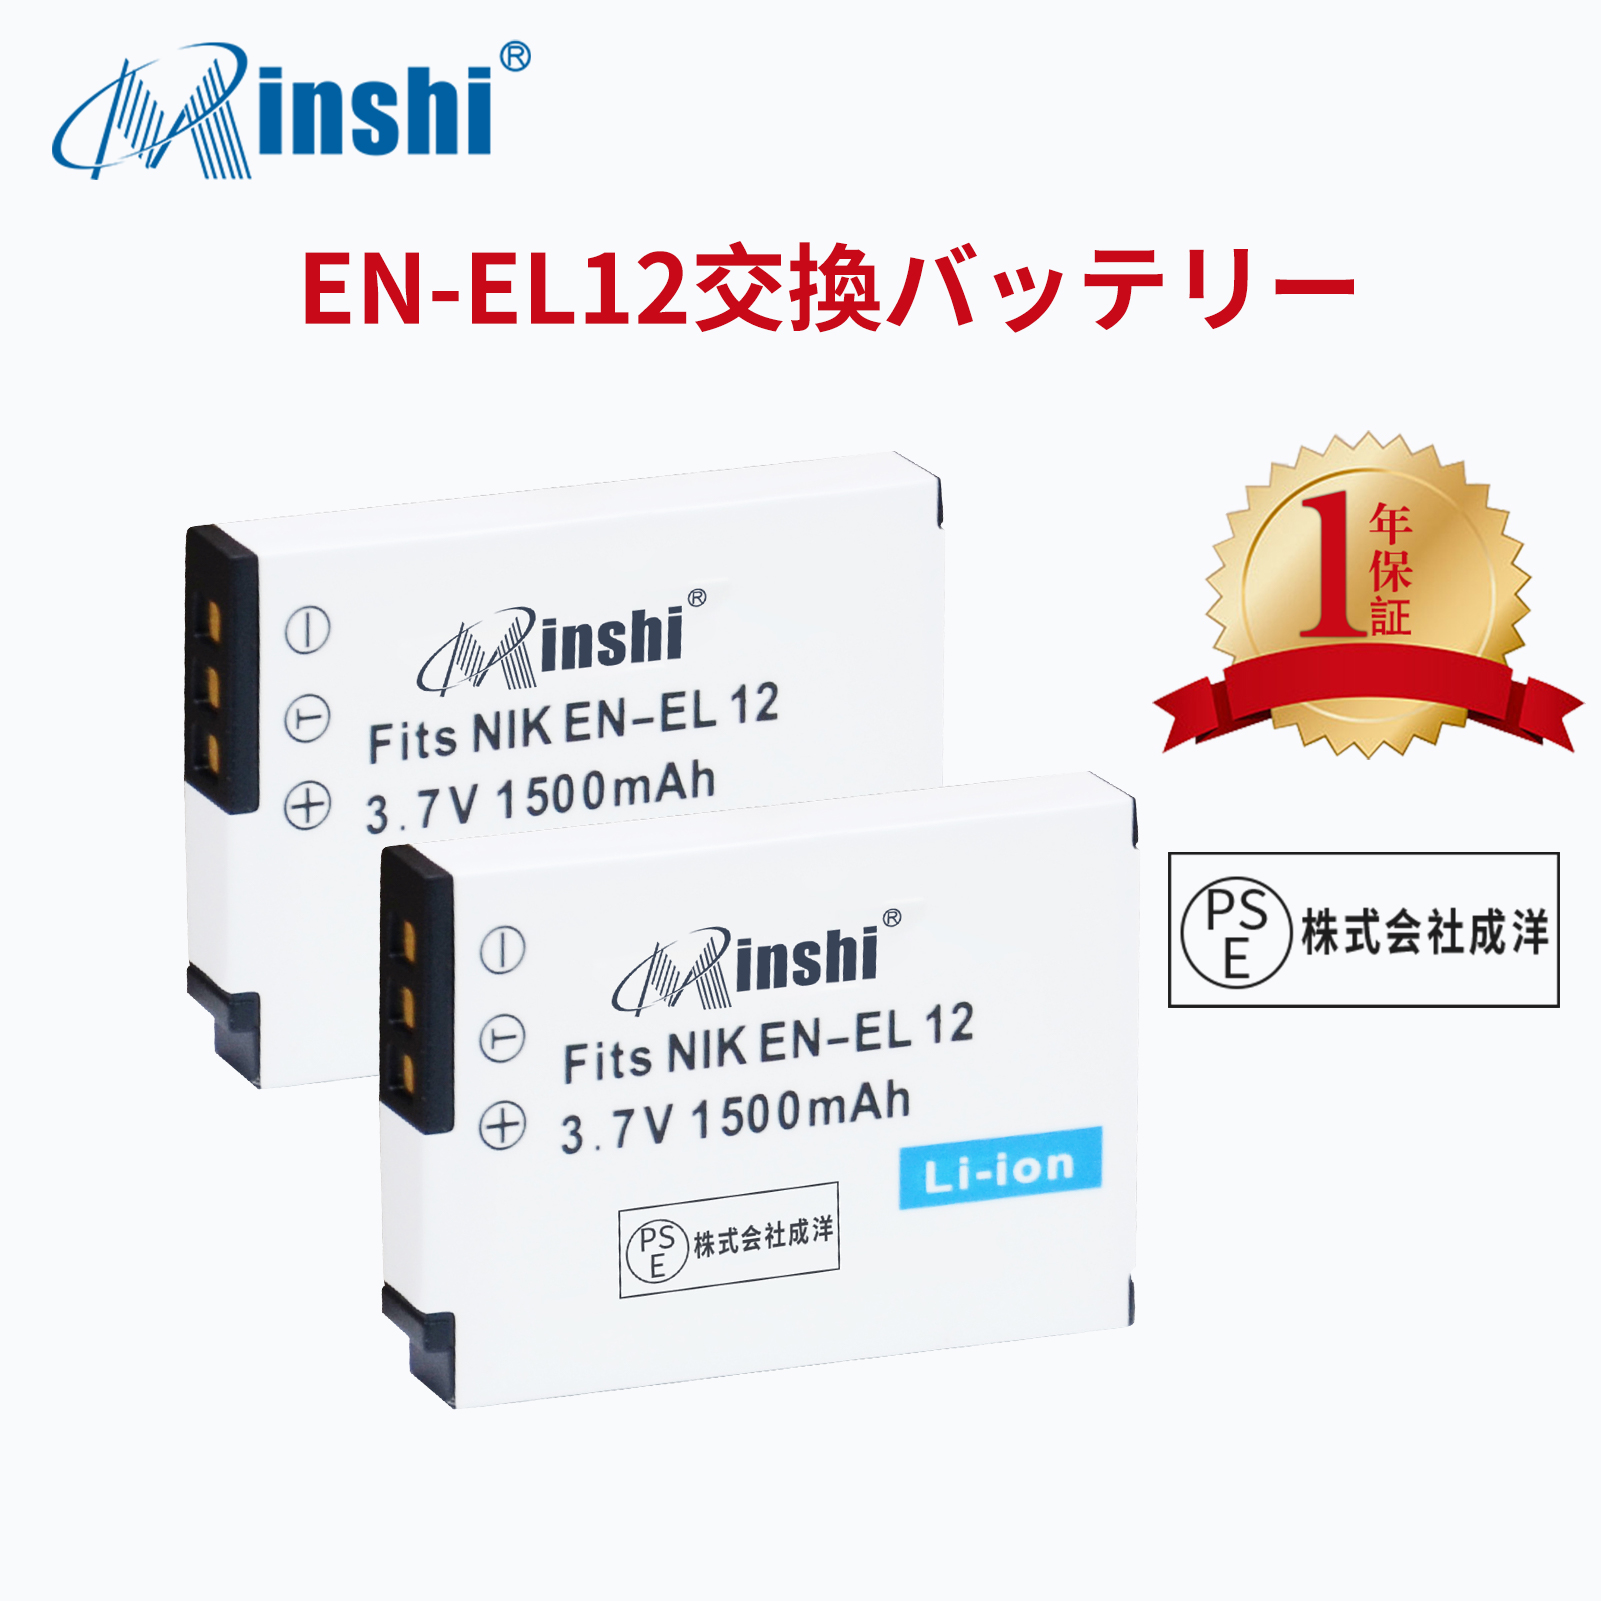 【２個】minshi NIKON COOLPIX S610c AW100 【1500mAh 3.7V】PSE認定済 高品質 EN-EL12 交換用バッテリー